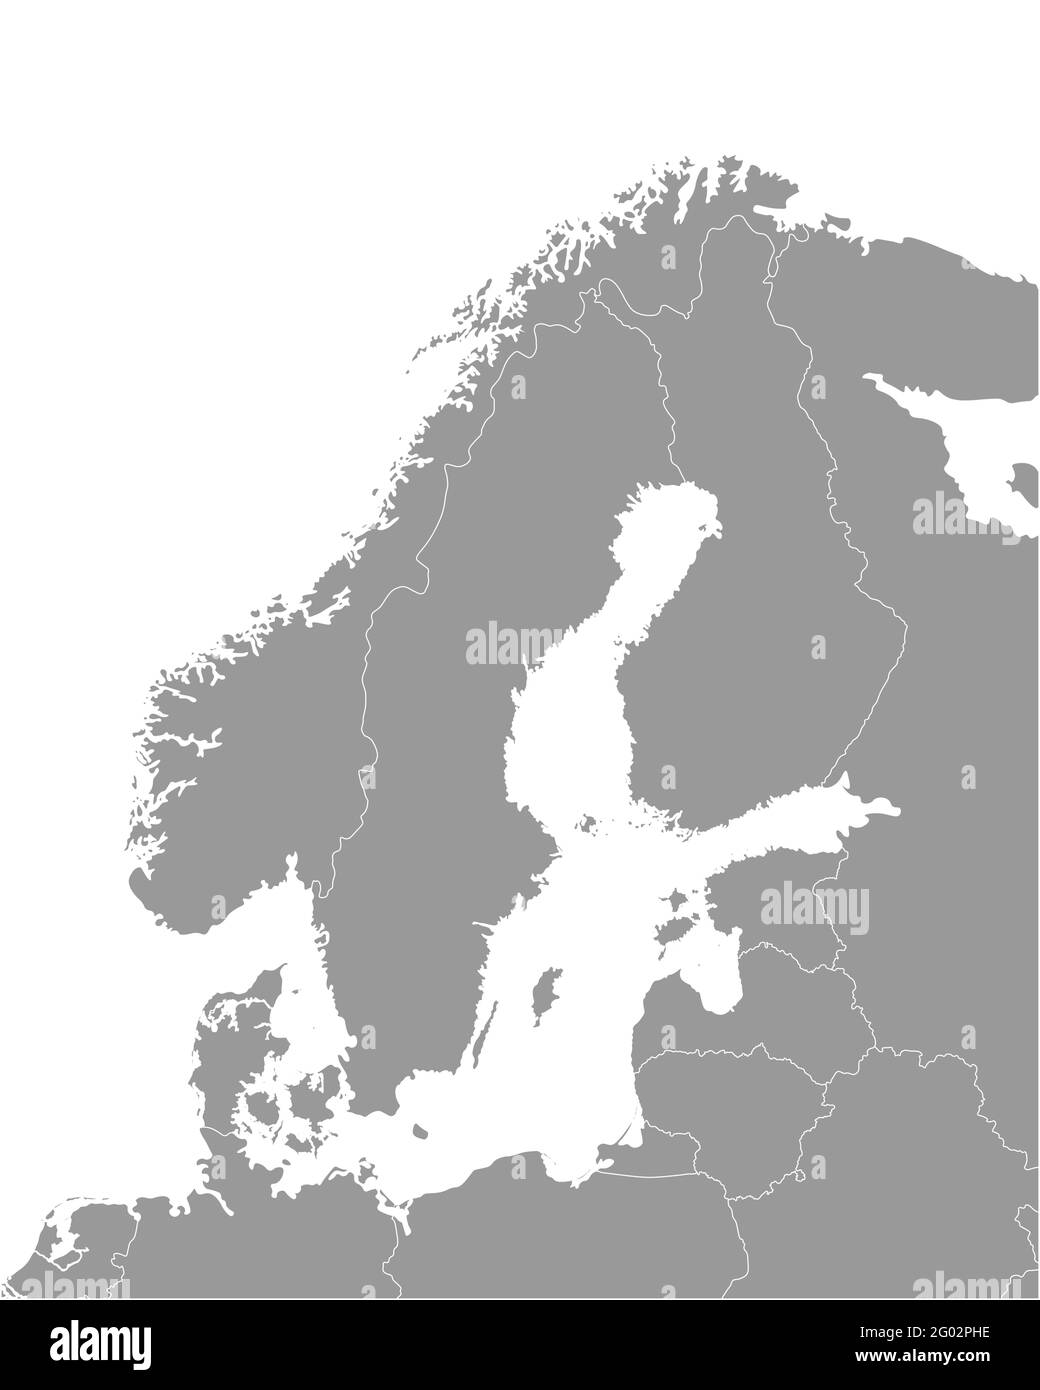 Vettore isolato illustrazione della mappa politica semplificata di alcuni paesi scandinavi (Svezia, Finlandia, Norvegia, Danimarca) e delle zone più vicine. Bordi Illustrazione Vettoriale